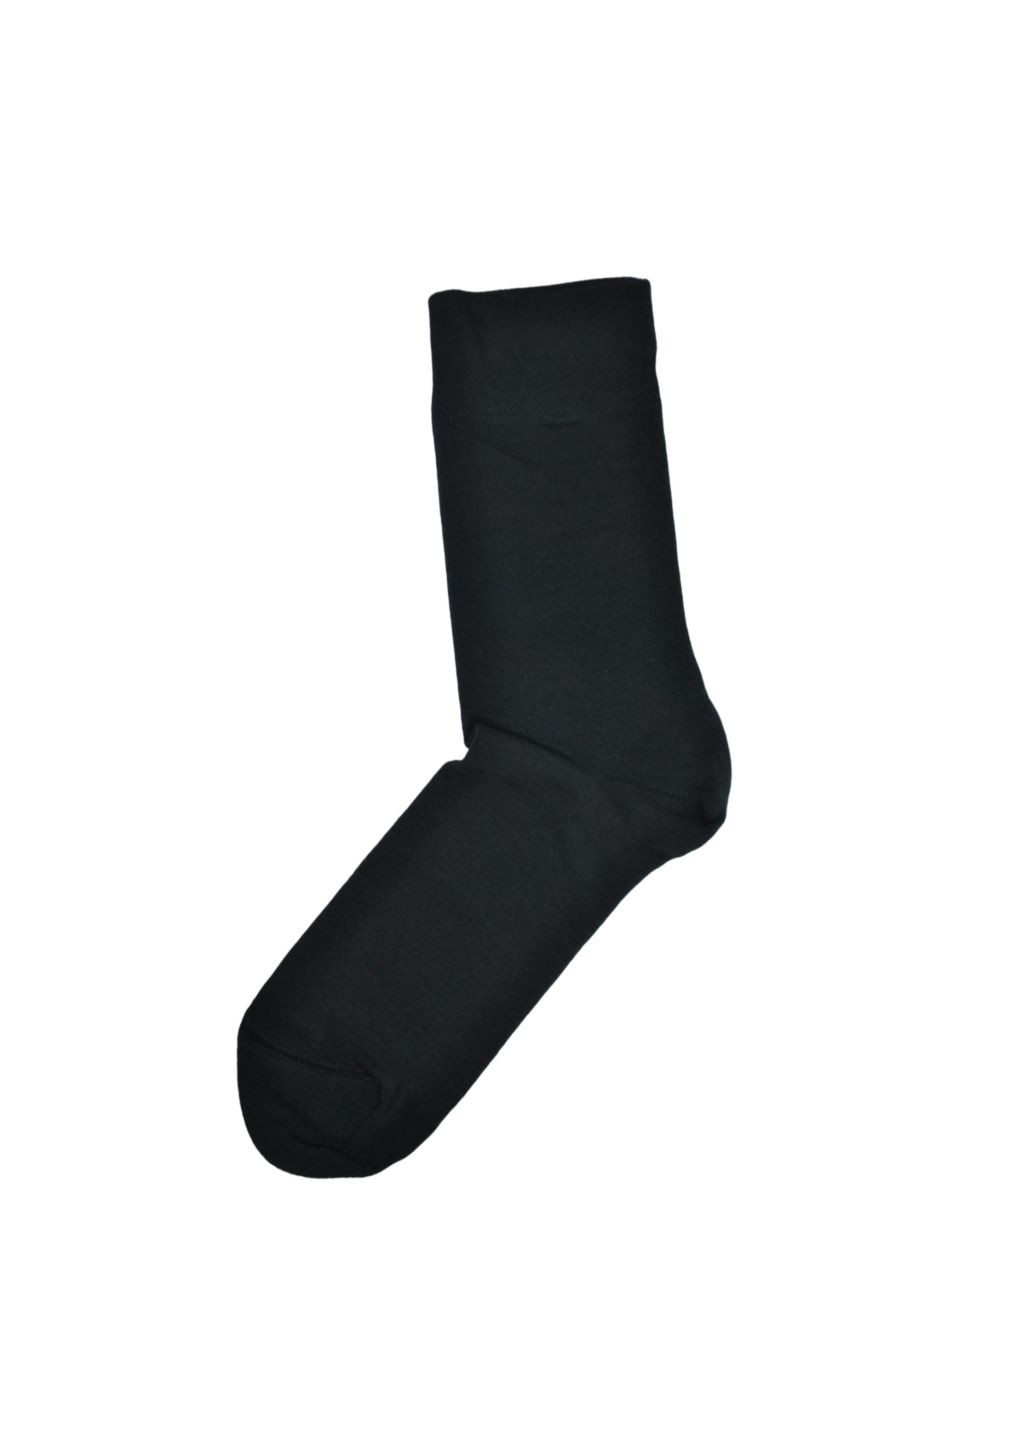 NTF Шкарпетки чол. (середньої довжини) MS3C/Sl-cl, р.39-42, black. Набір (3 шт.) MZ ms3c_sl-cl (259038665)